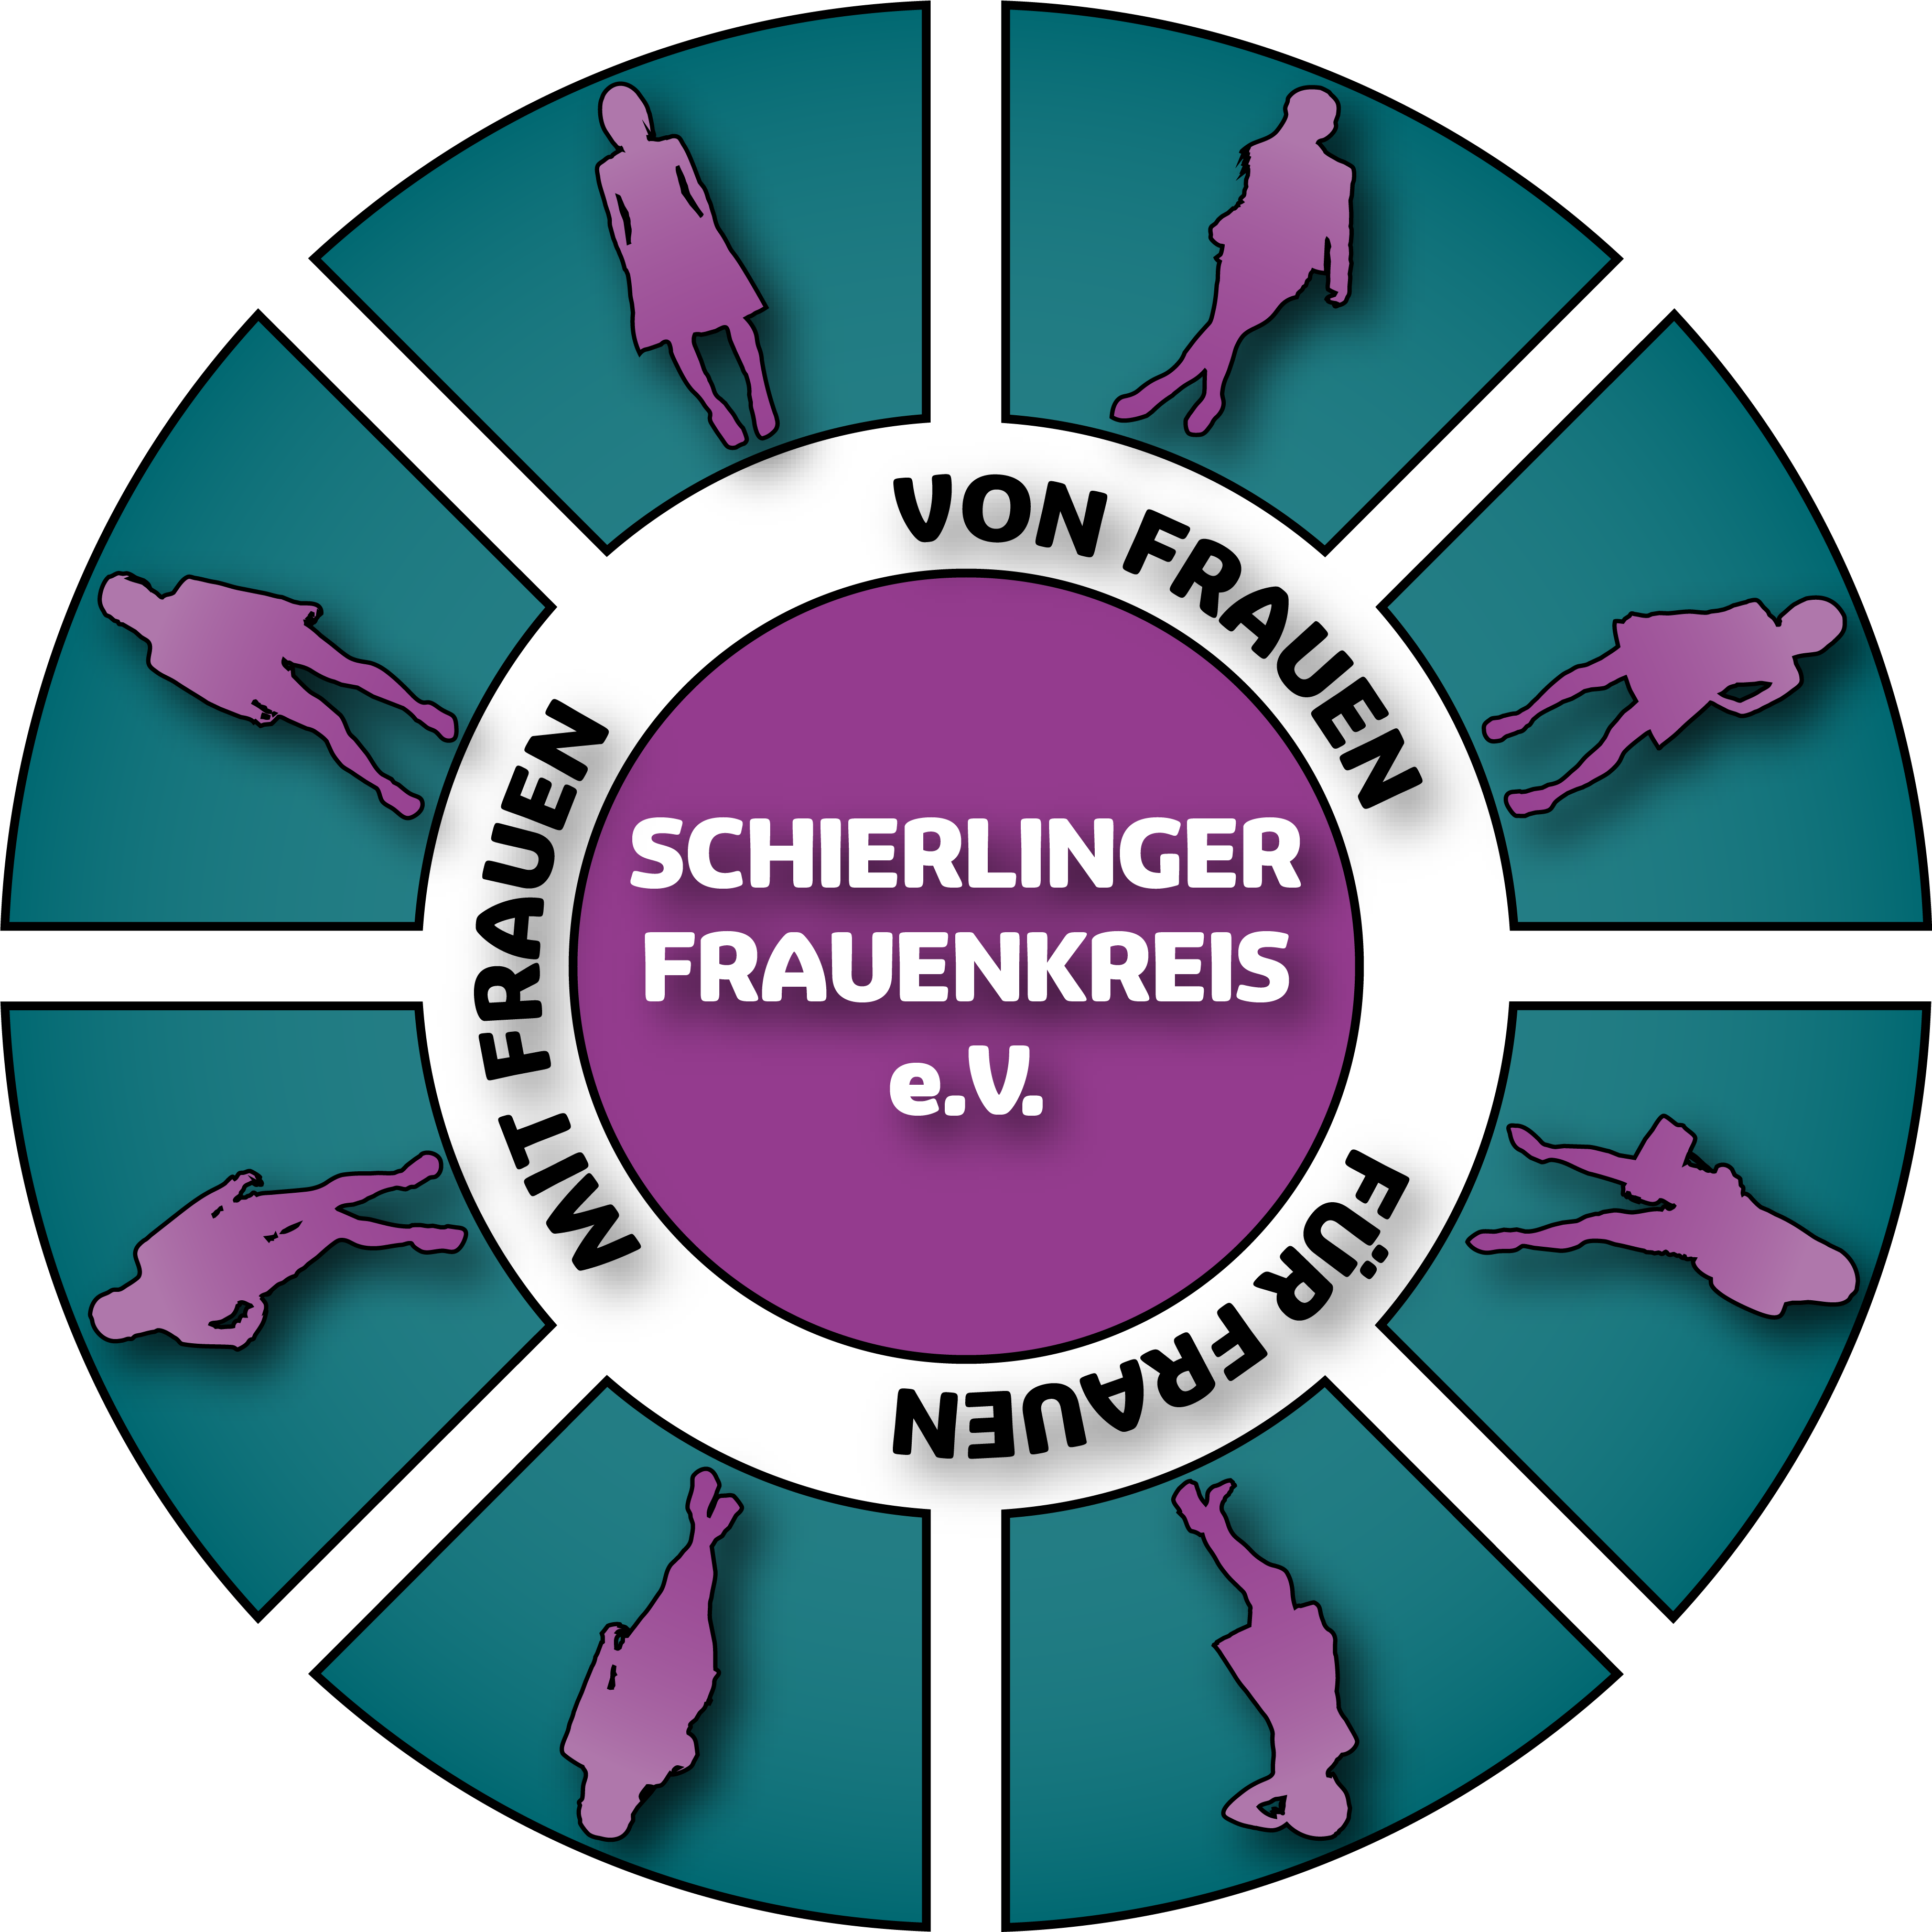 Schierlinger Frauenkreis e.V.